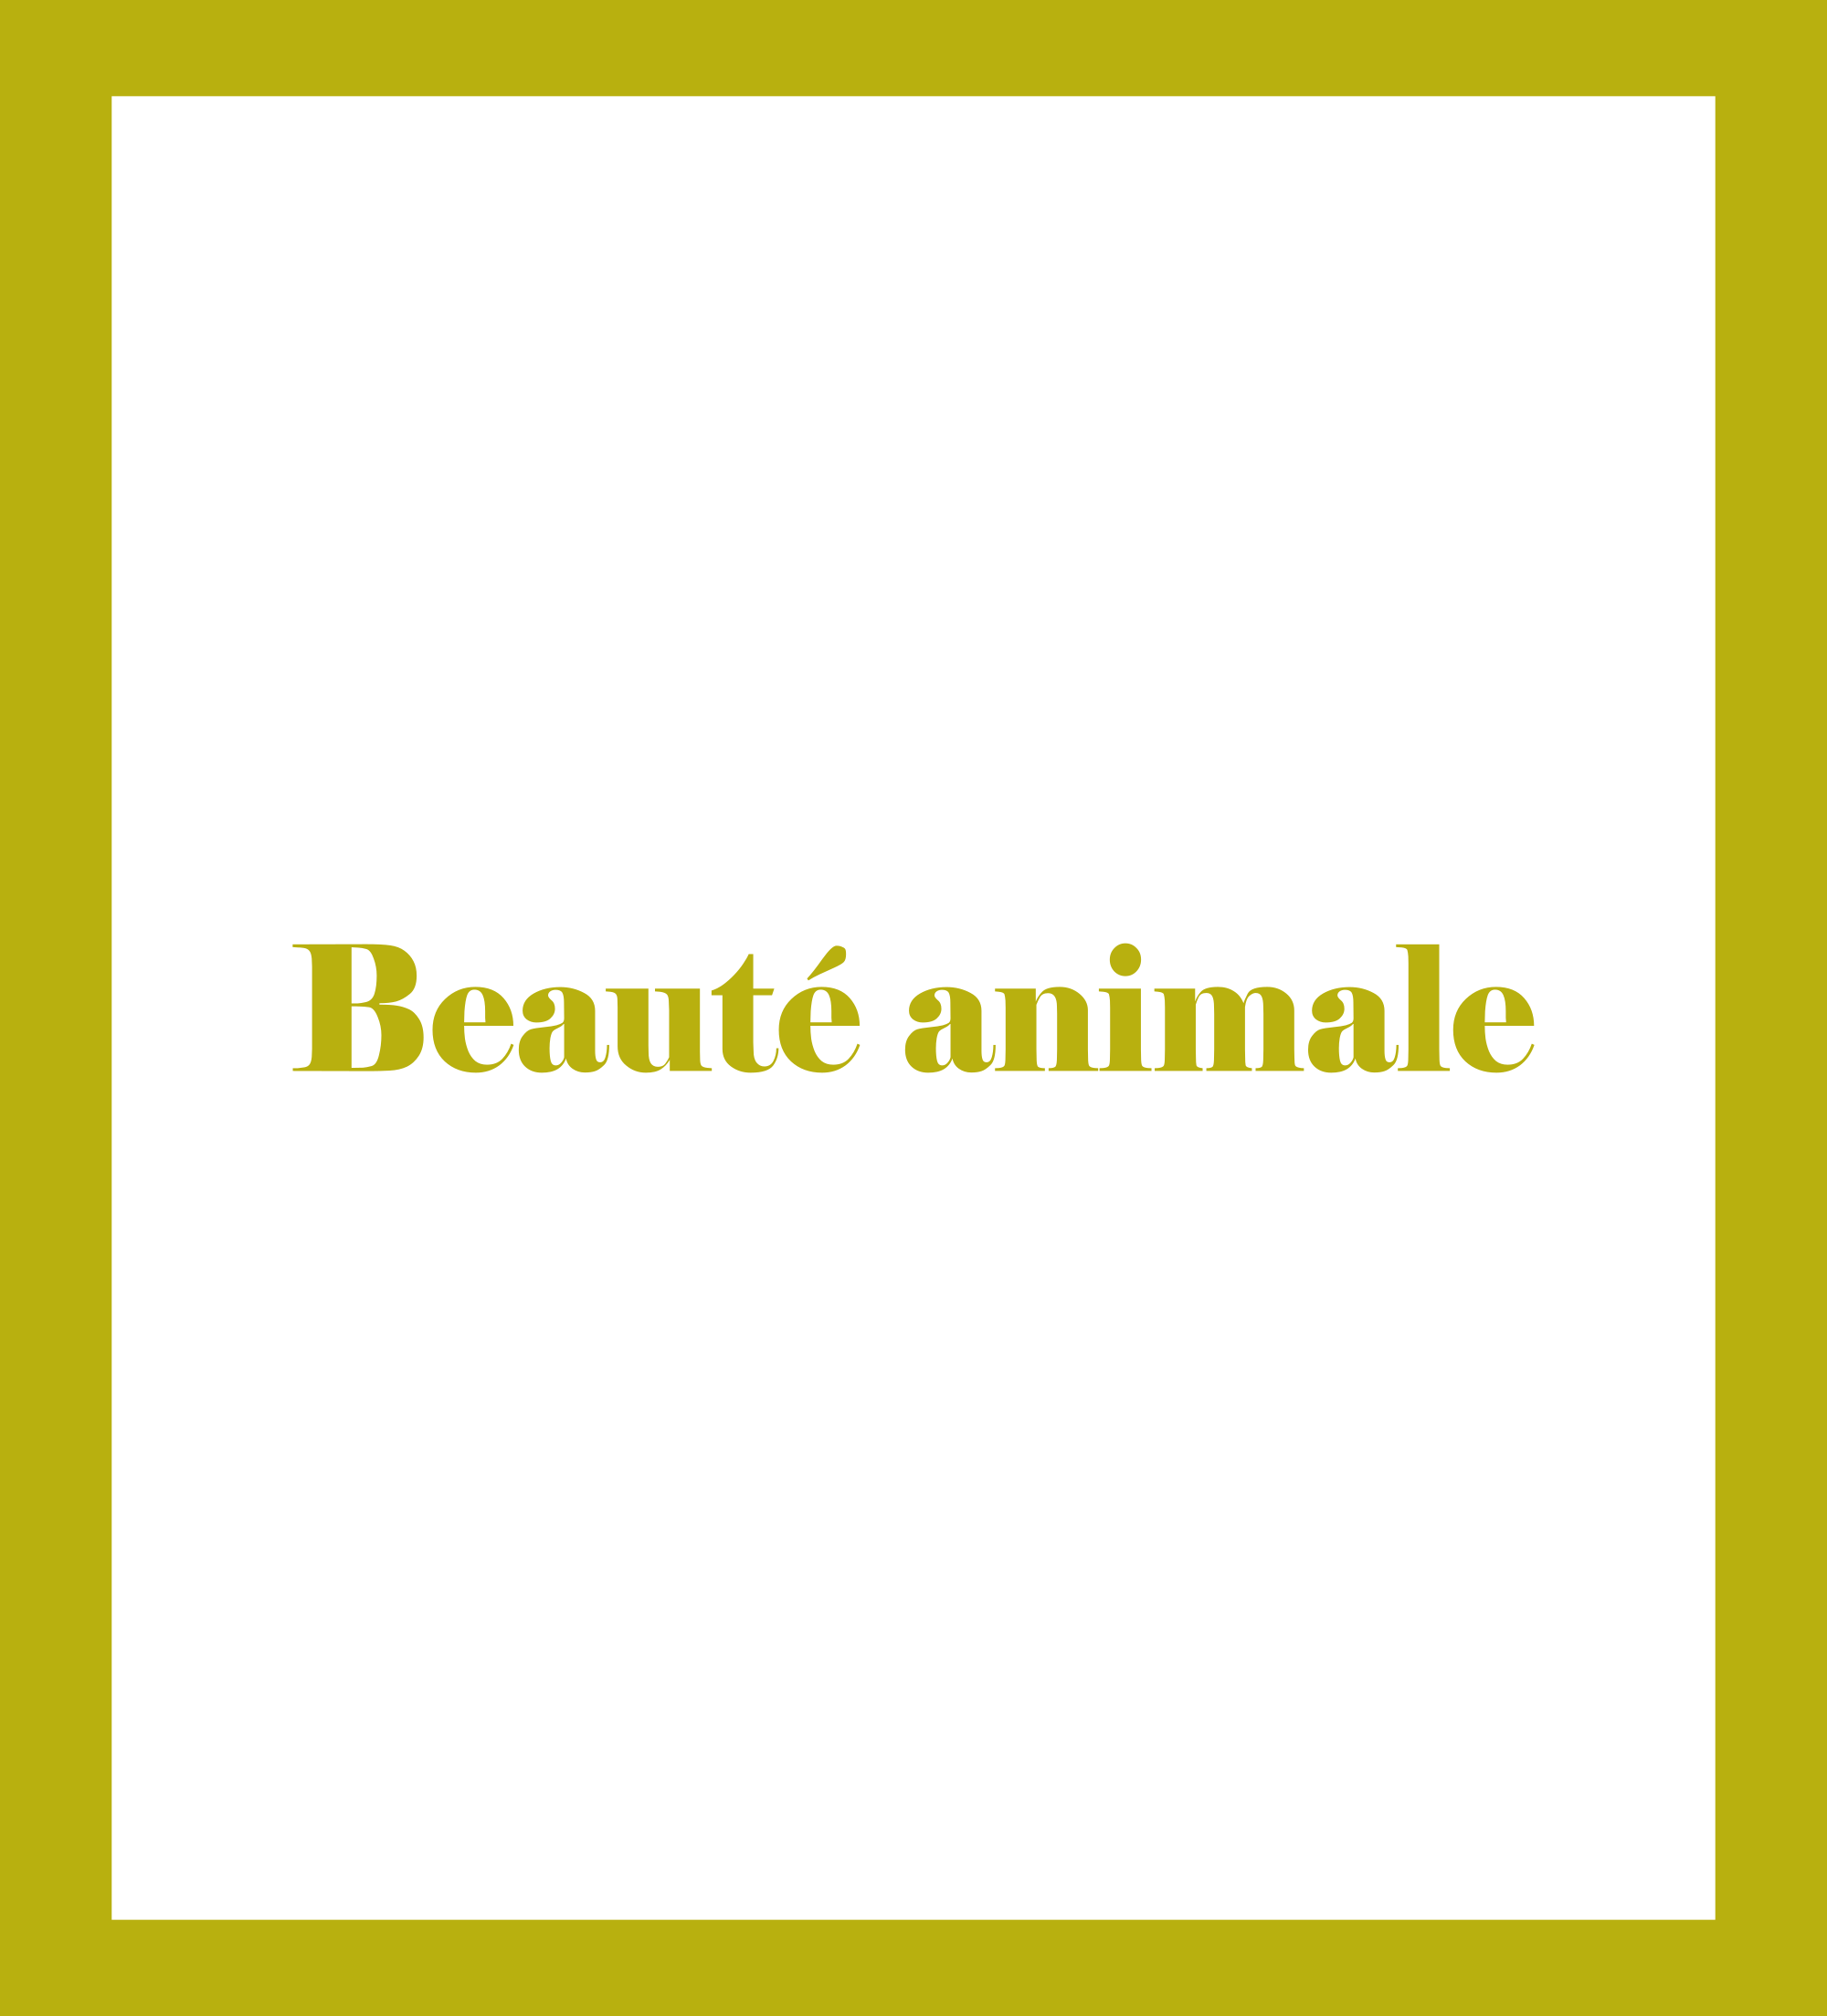 Caratula de Beauté animale (Belleza animal) 